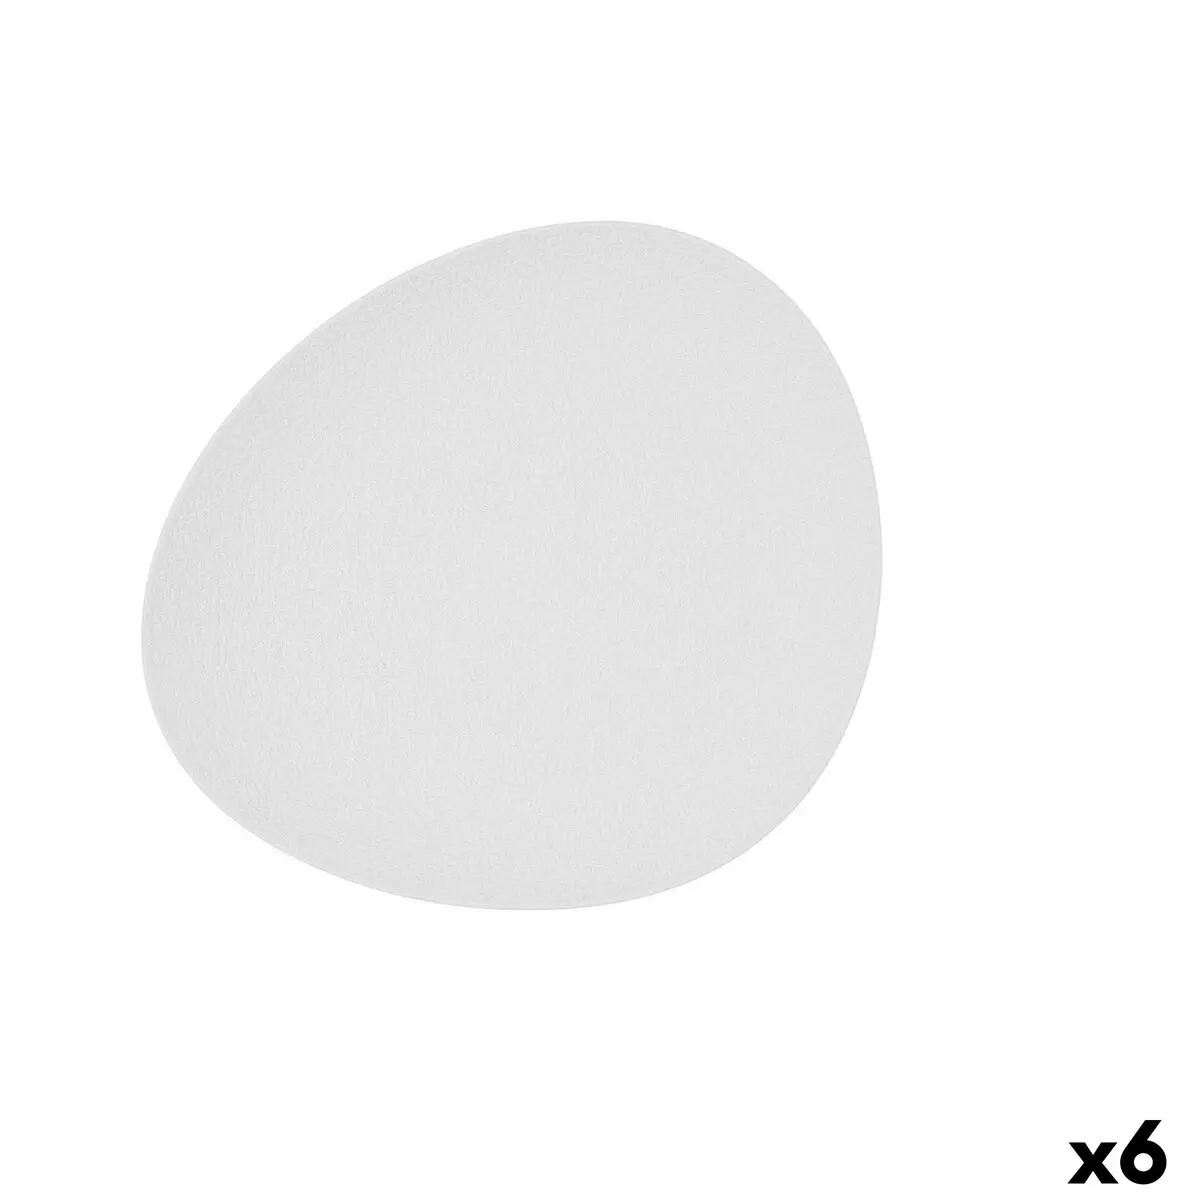 Piatto da pranzo Bidasoa Fosil Bianco Ceramica Ovale 28 x 24,8 x 2,5 cm (6 Unità)